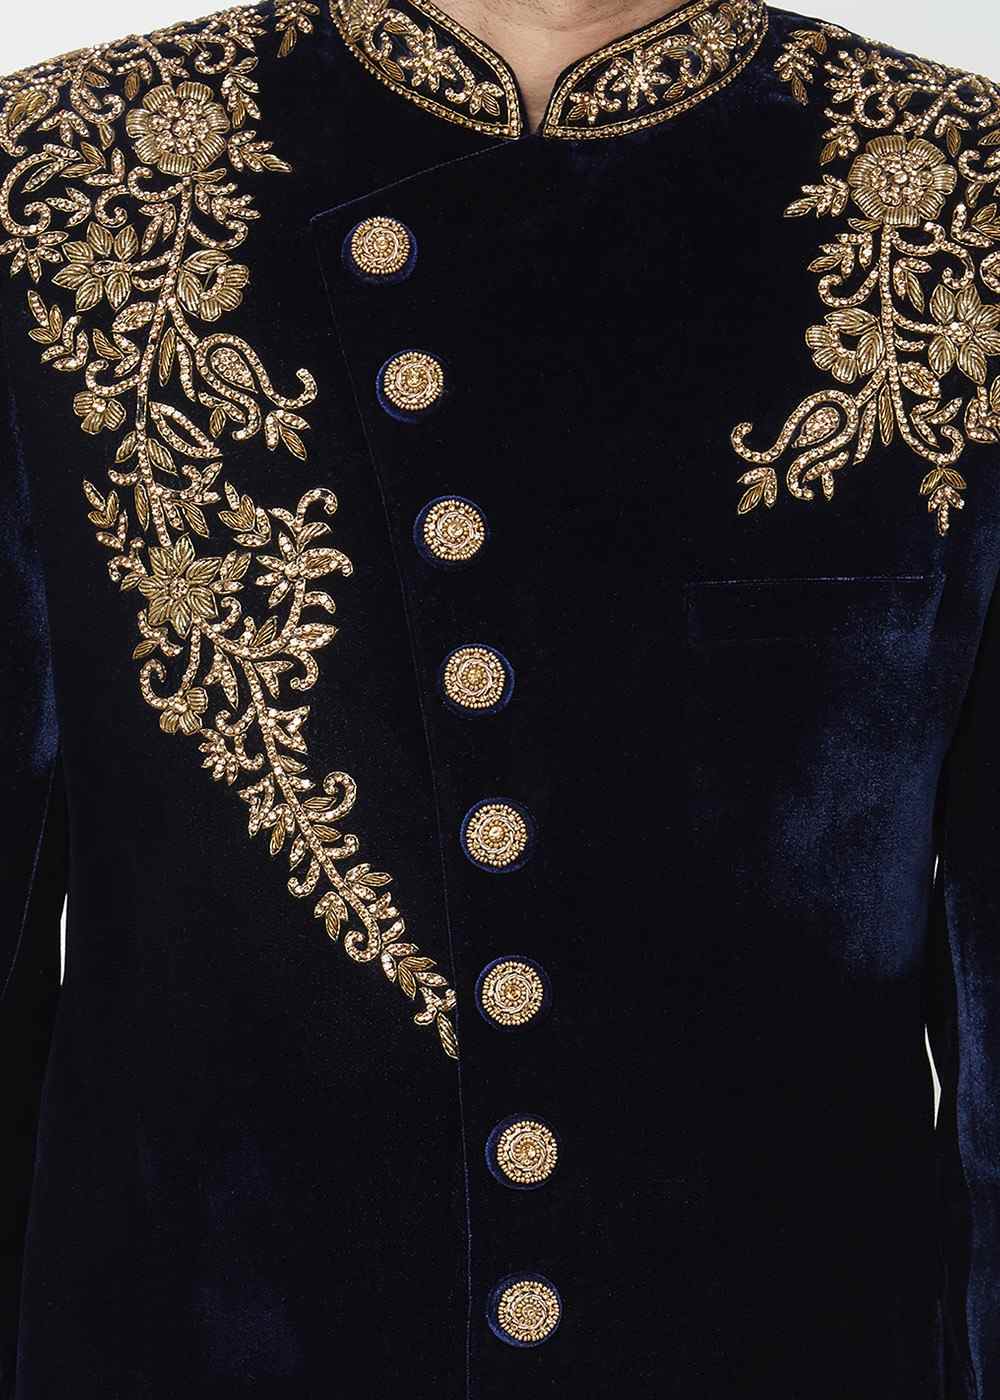 Embroidered Black Velvet Indo Western Wedding Sherwani For Men - Ethnic World